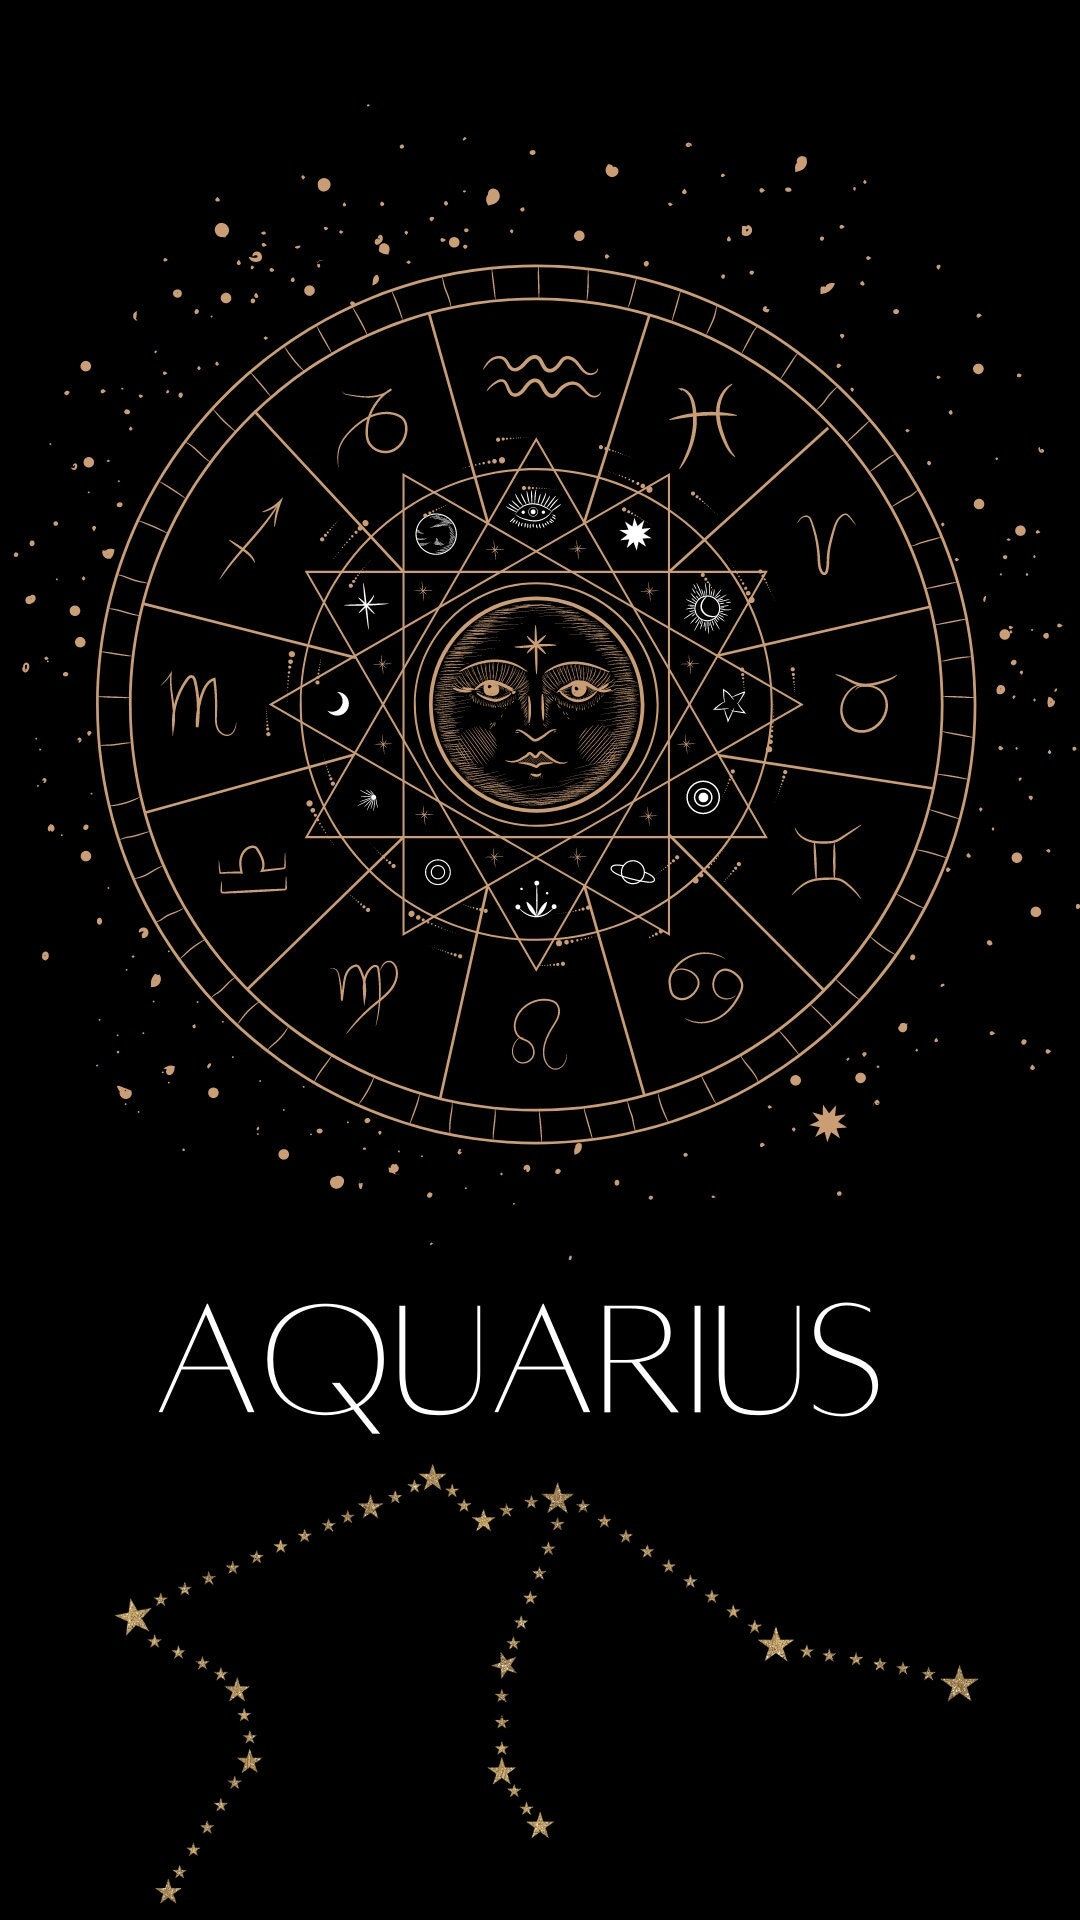 Aquarius zodiac sign poster - Aquarius